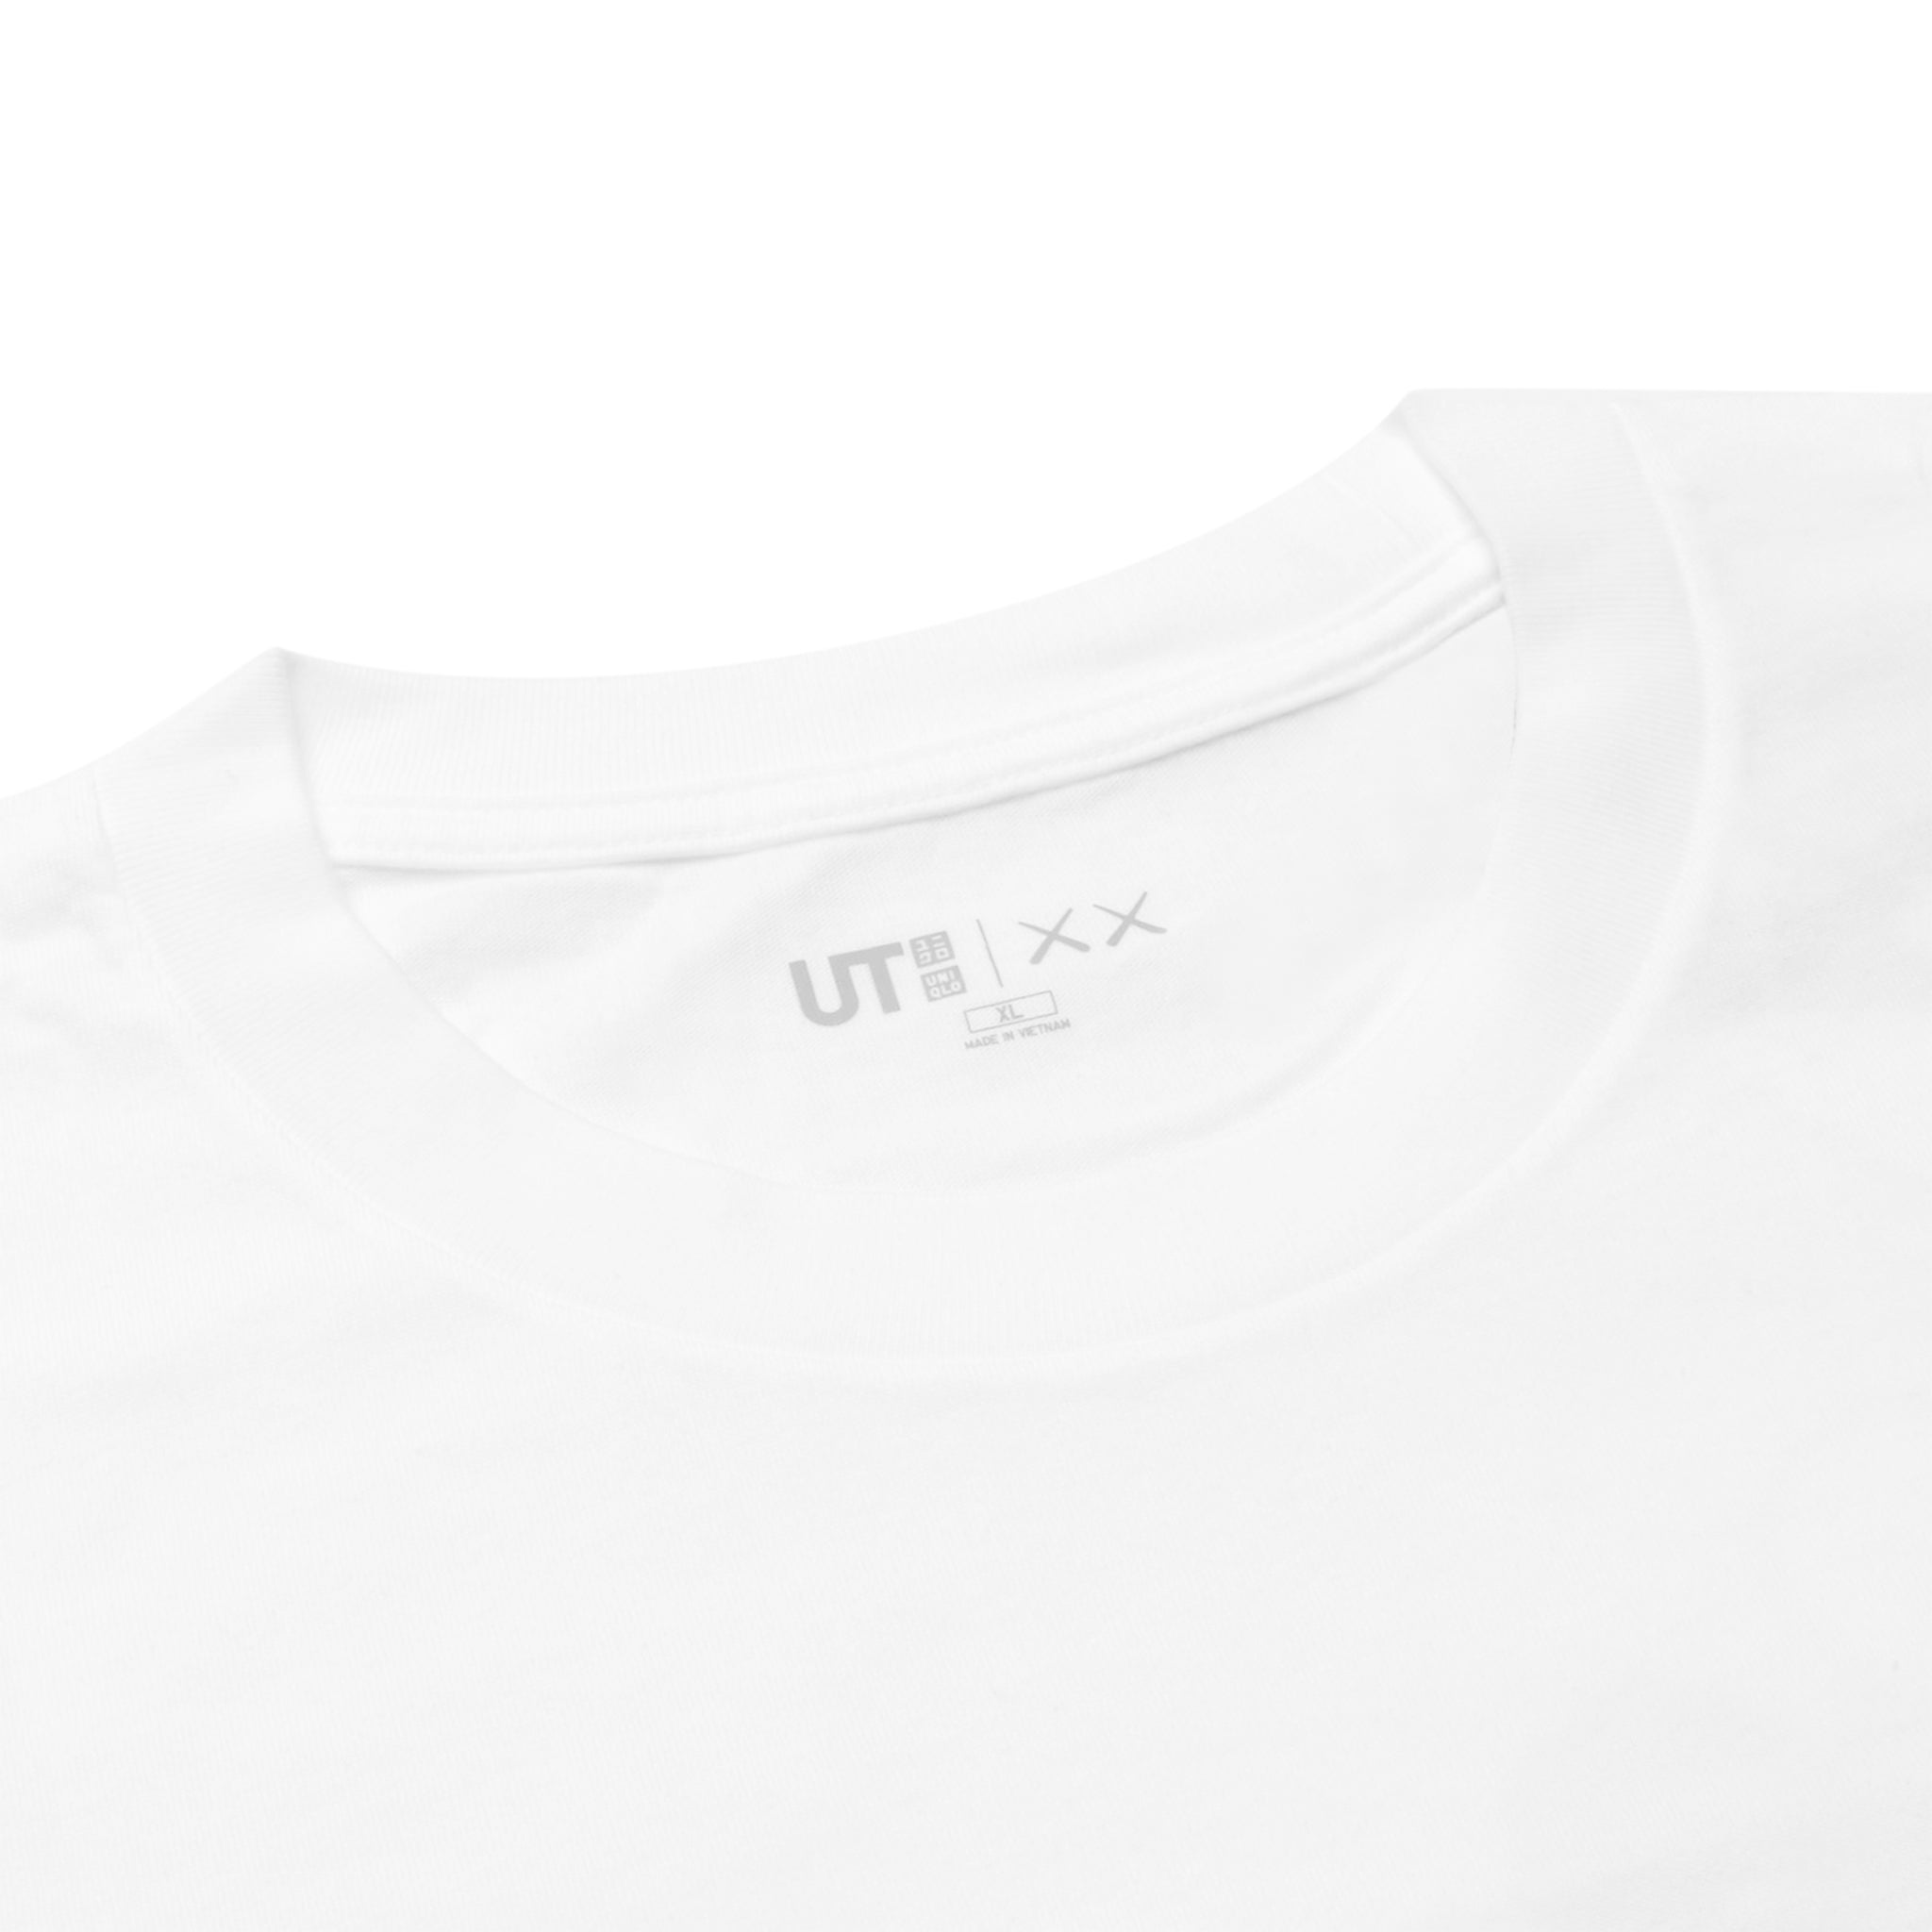 Neck view of Kaws X Uniqlo Ut Graphic White T Shirt 467774